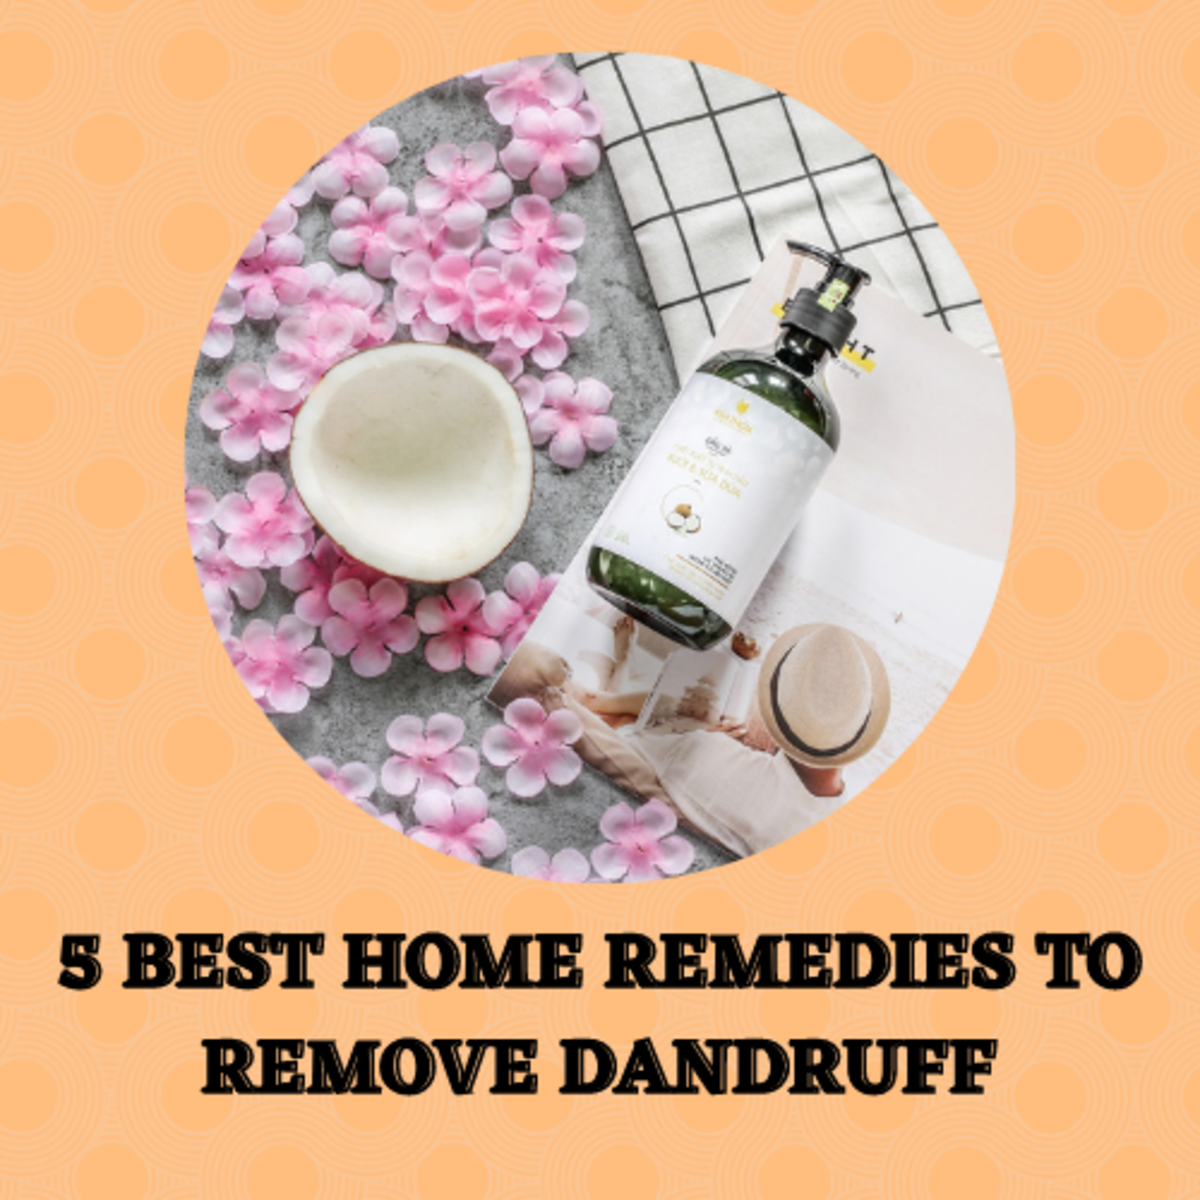 5 Home Remedies to Remove Dandruff